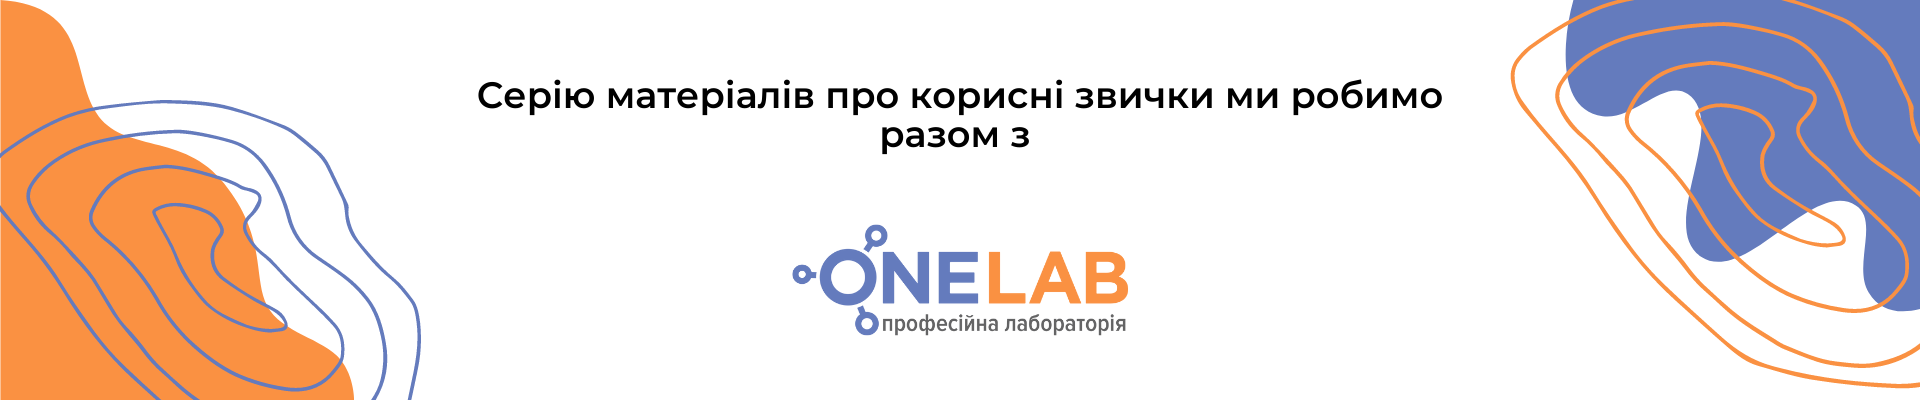 Onelab